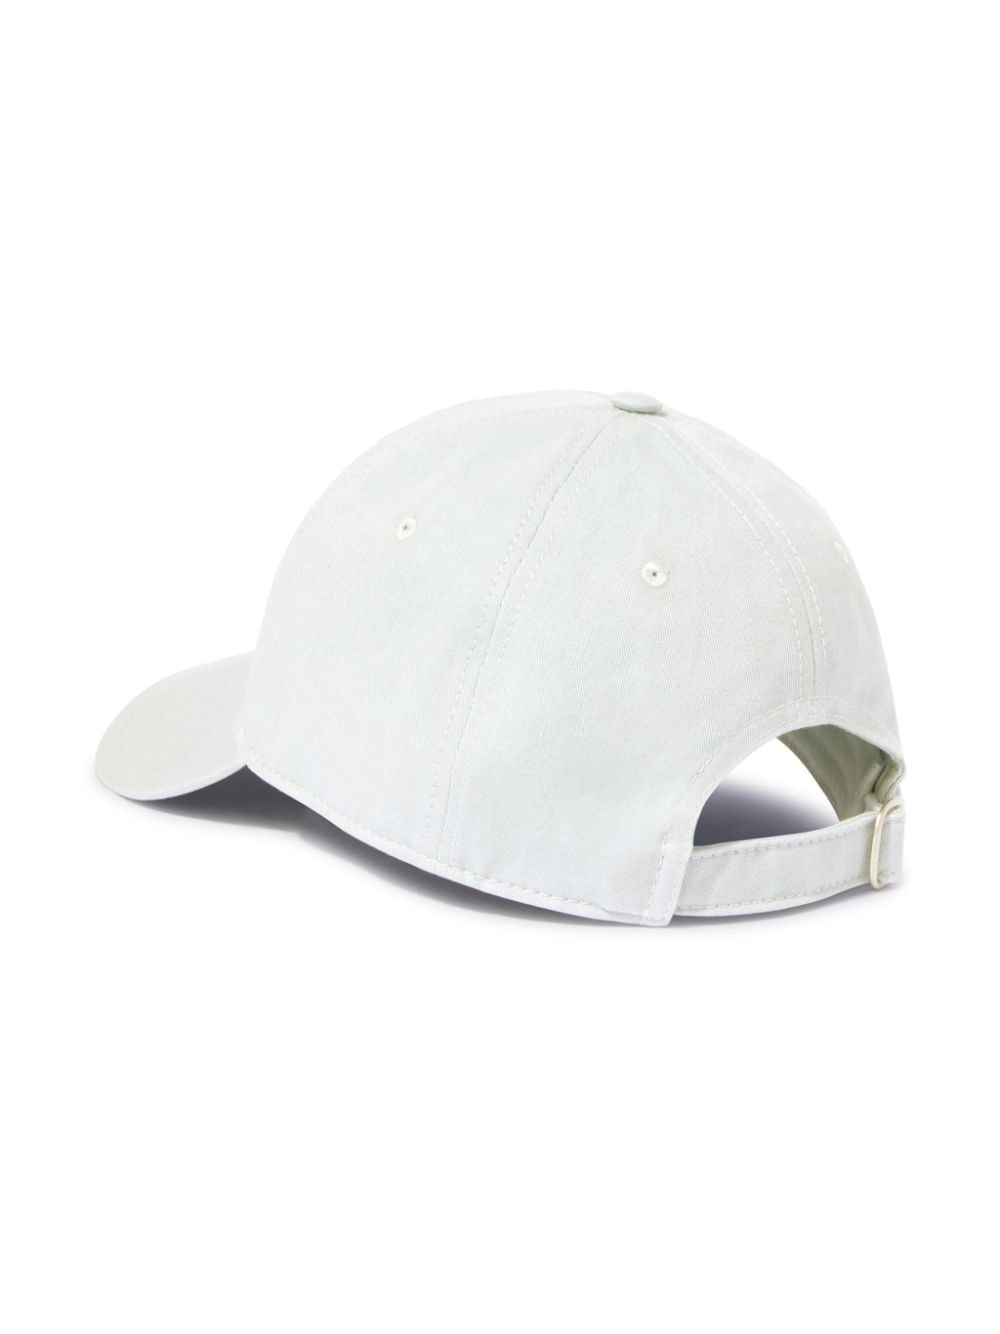 Arrow baseball cap - 2